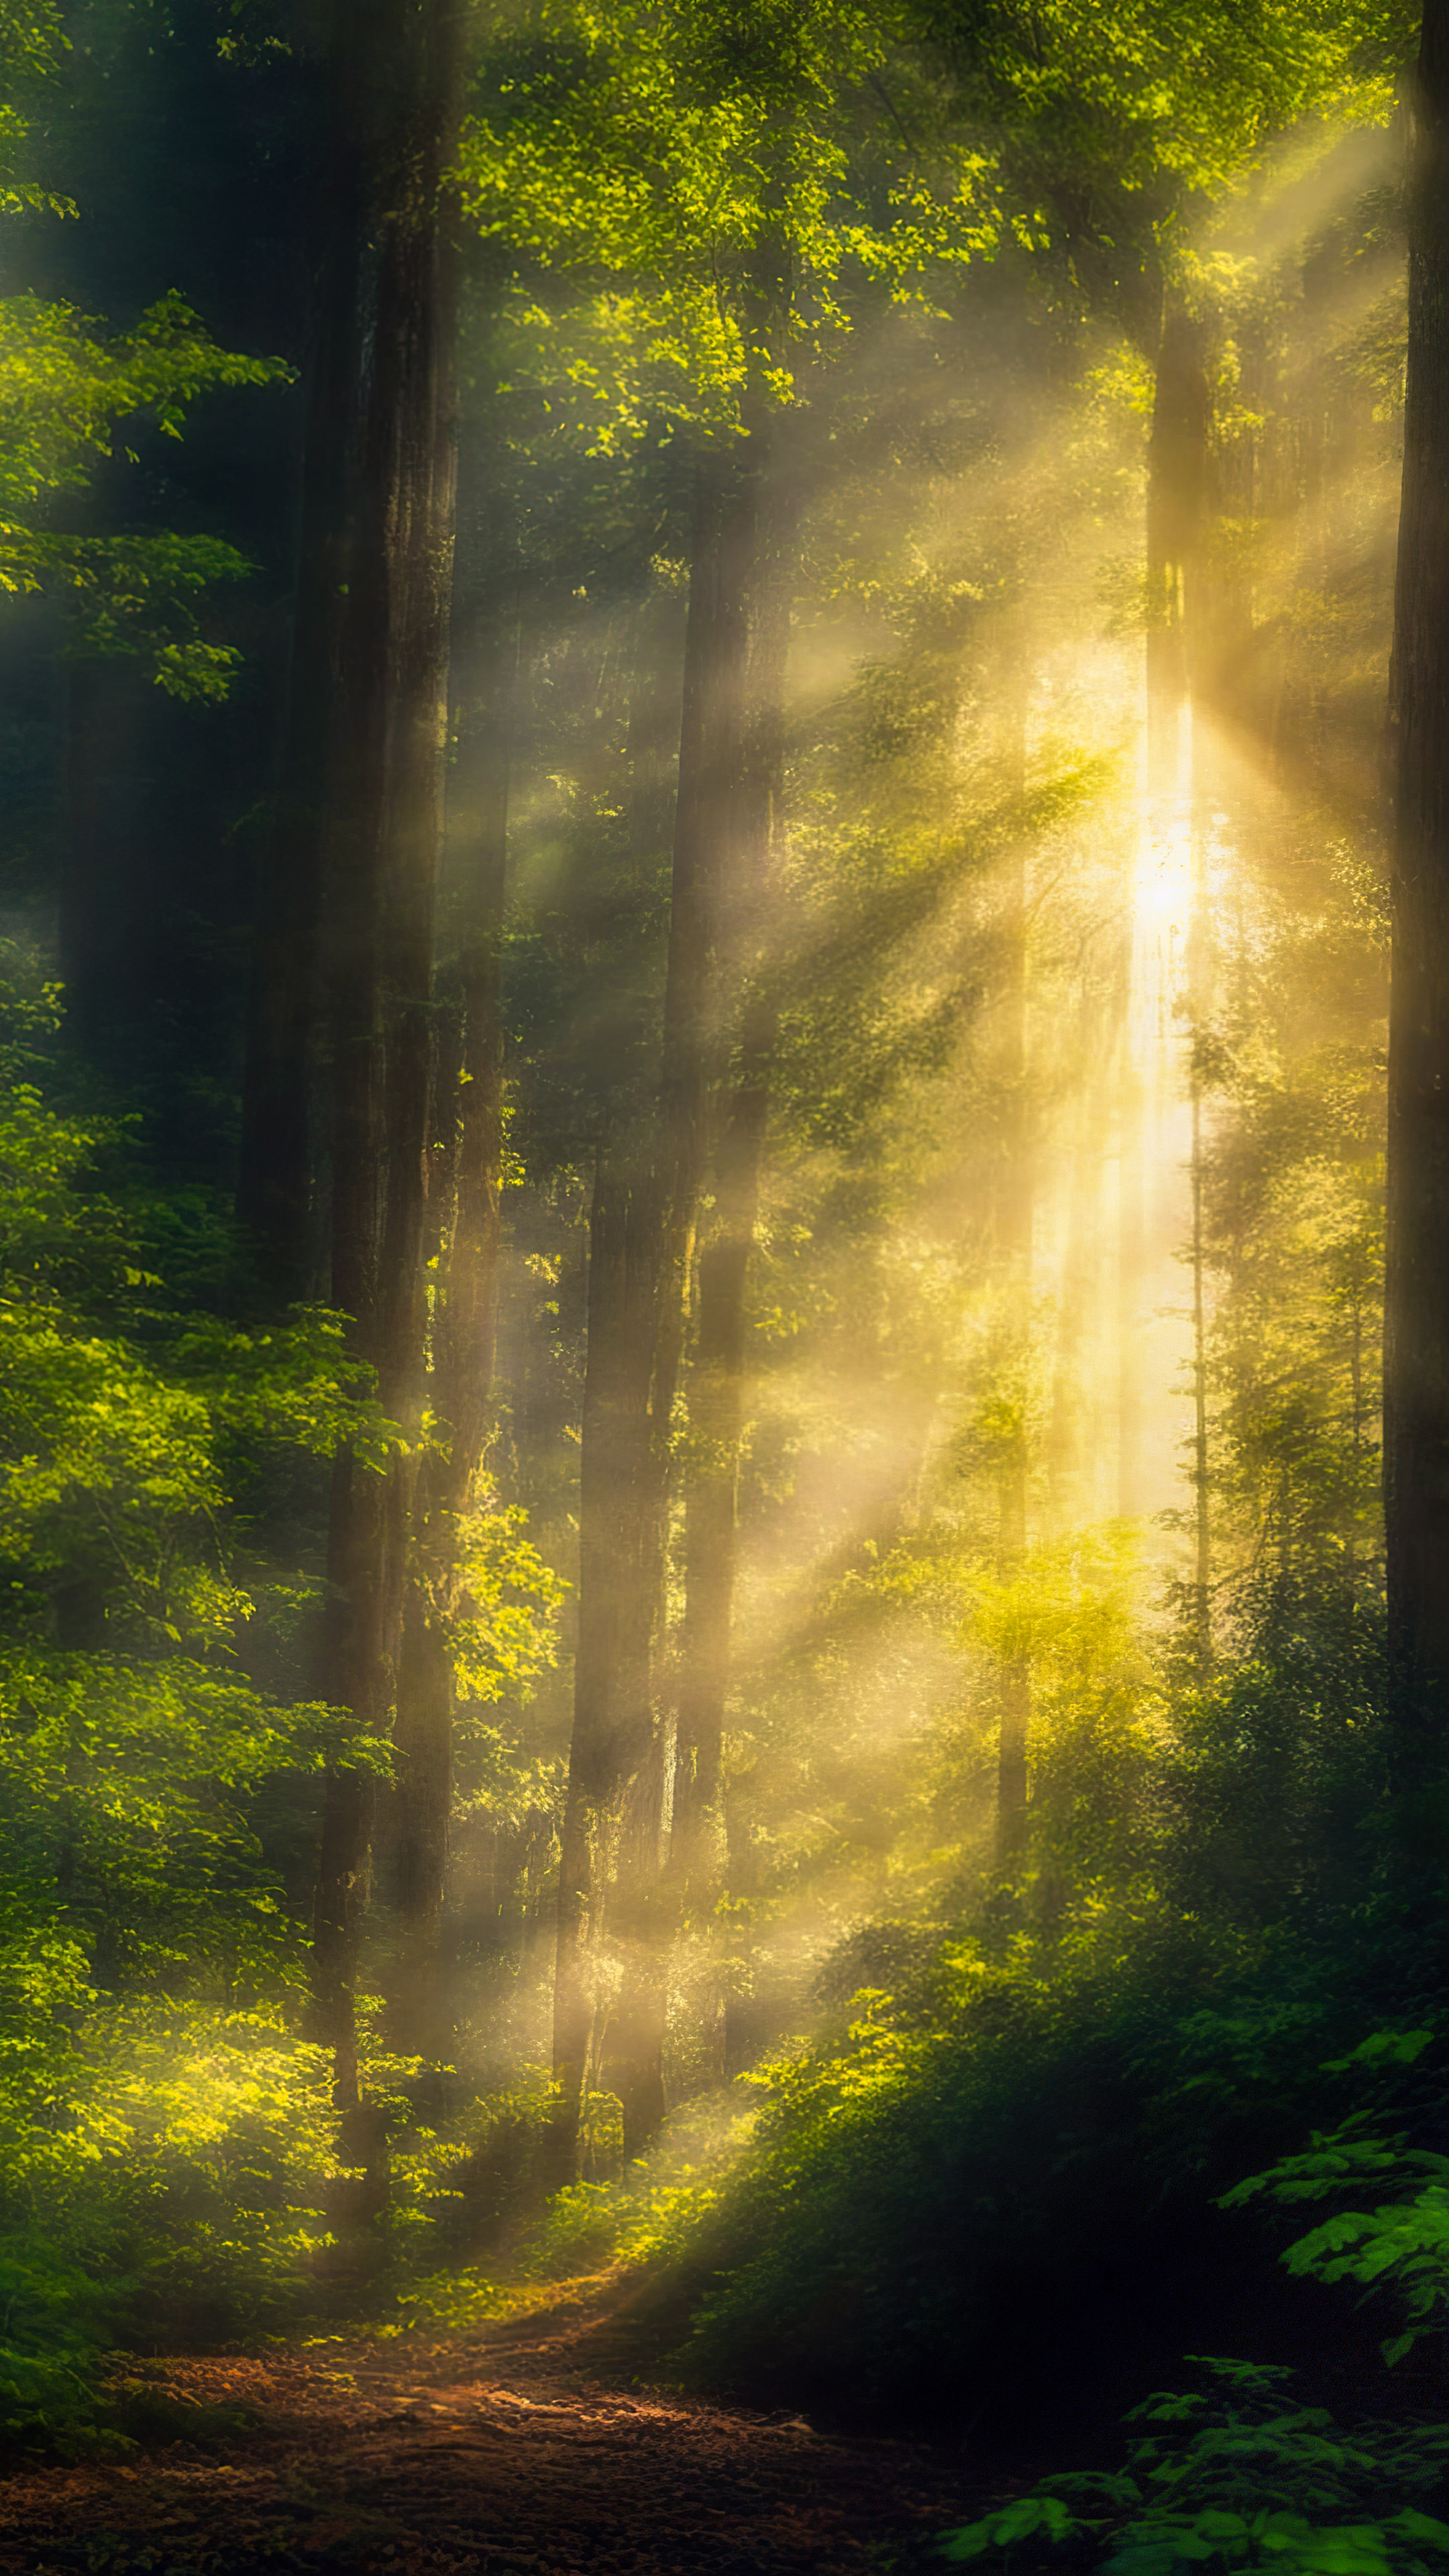 Téléchargez ce fond d'écran de nature avec de belles images, présentant une scène sereine de forêt avec la lumière du soleil filtrant à travers la canopée dense, projetant des ombres mouchetées sur le sol de la forêt.